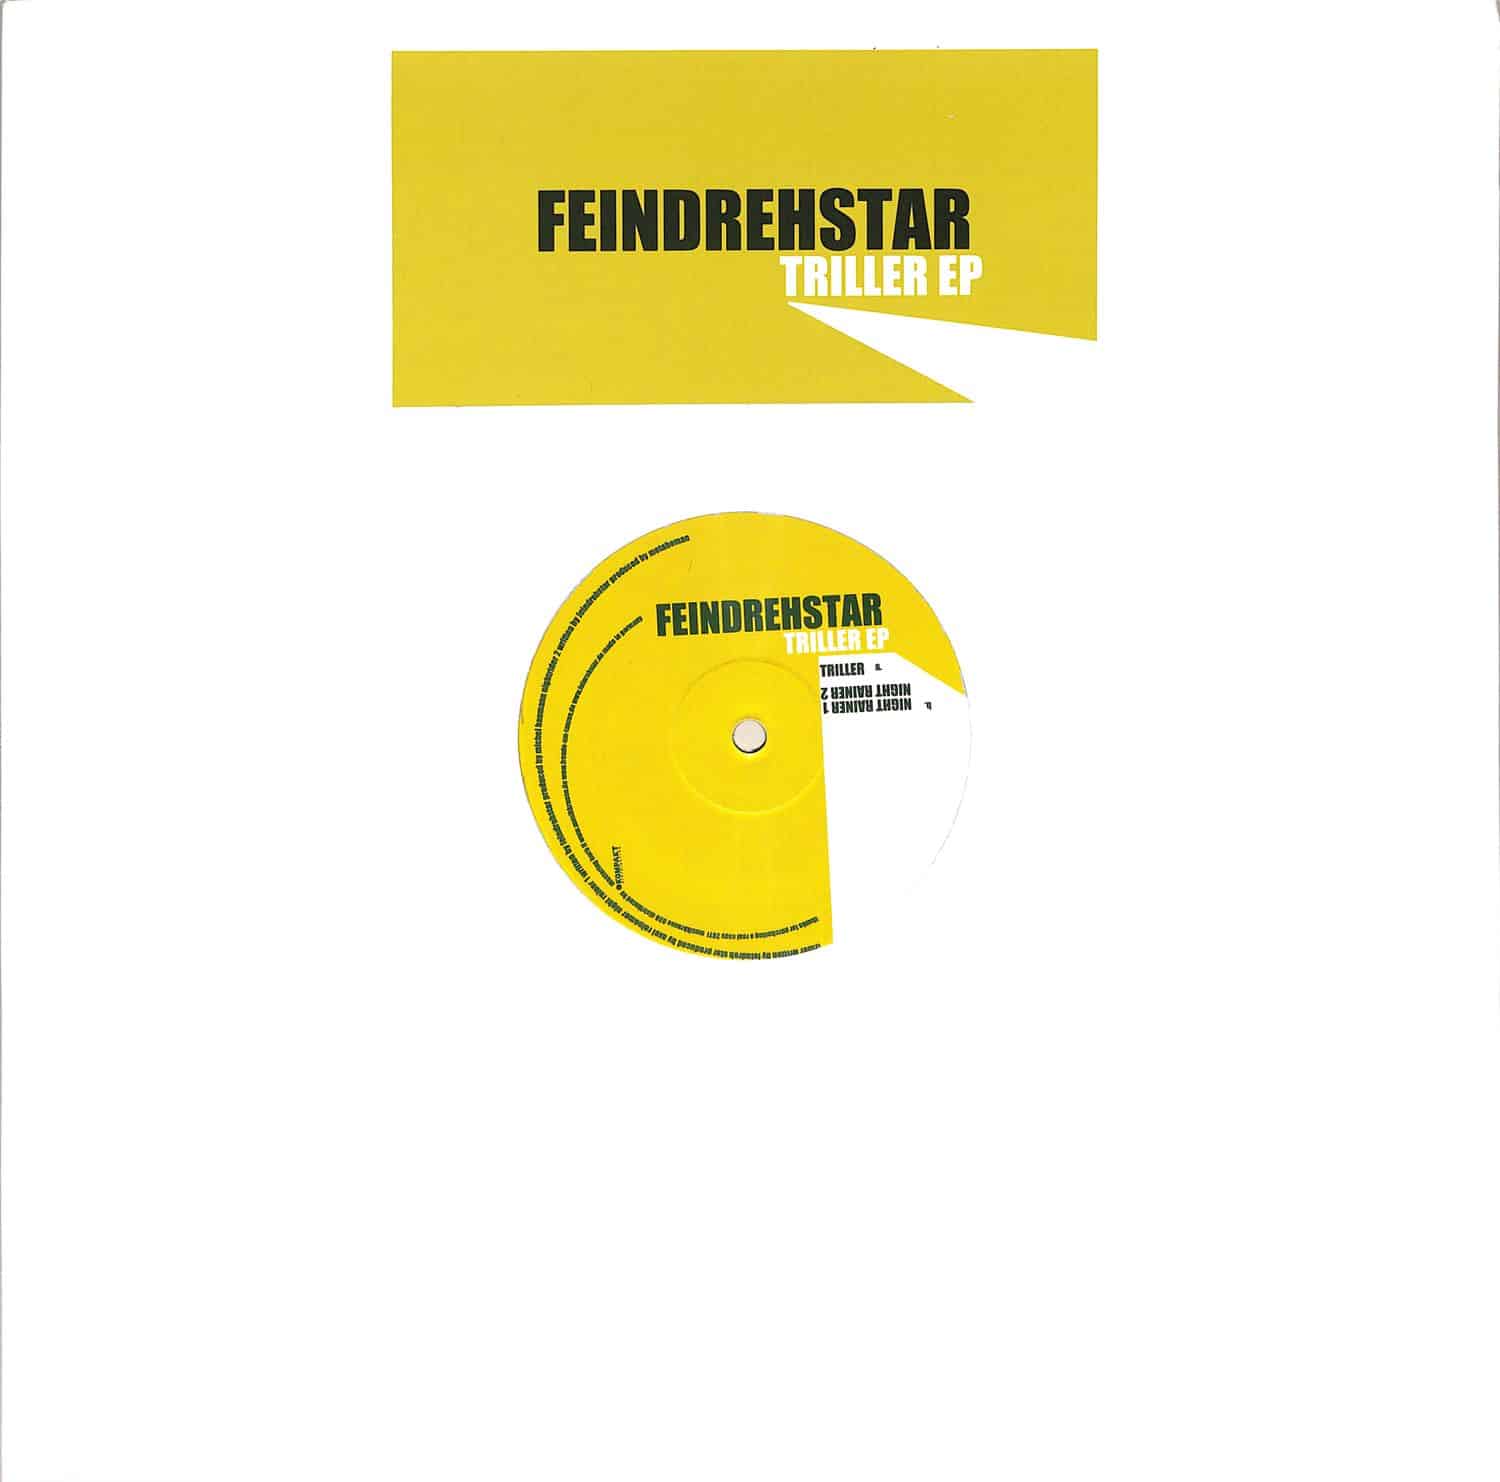 Feindrehstar - TRILLER EP